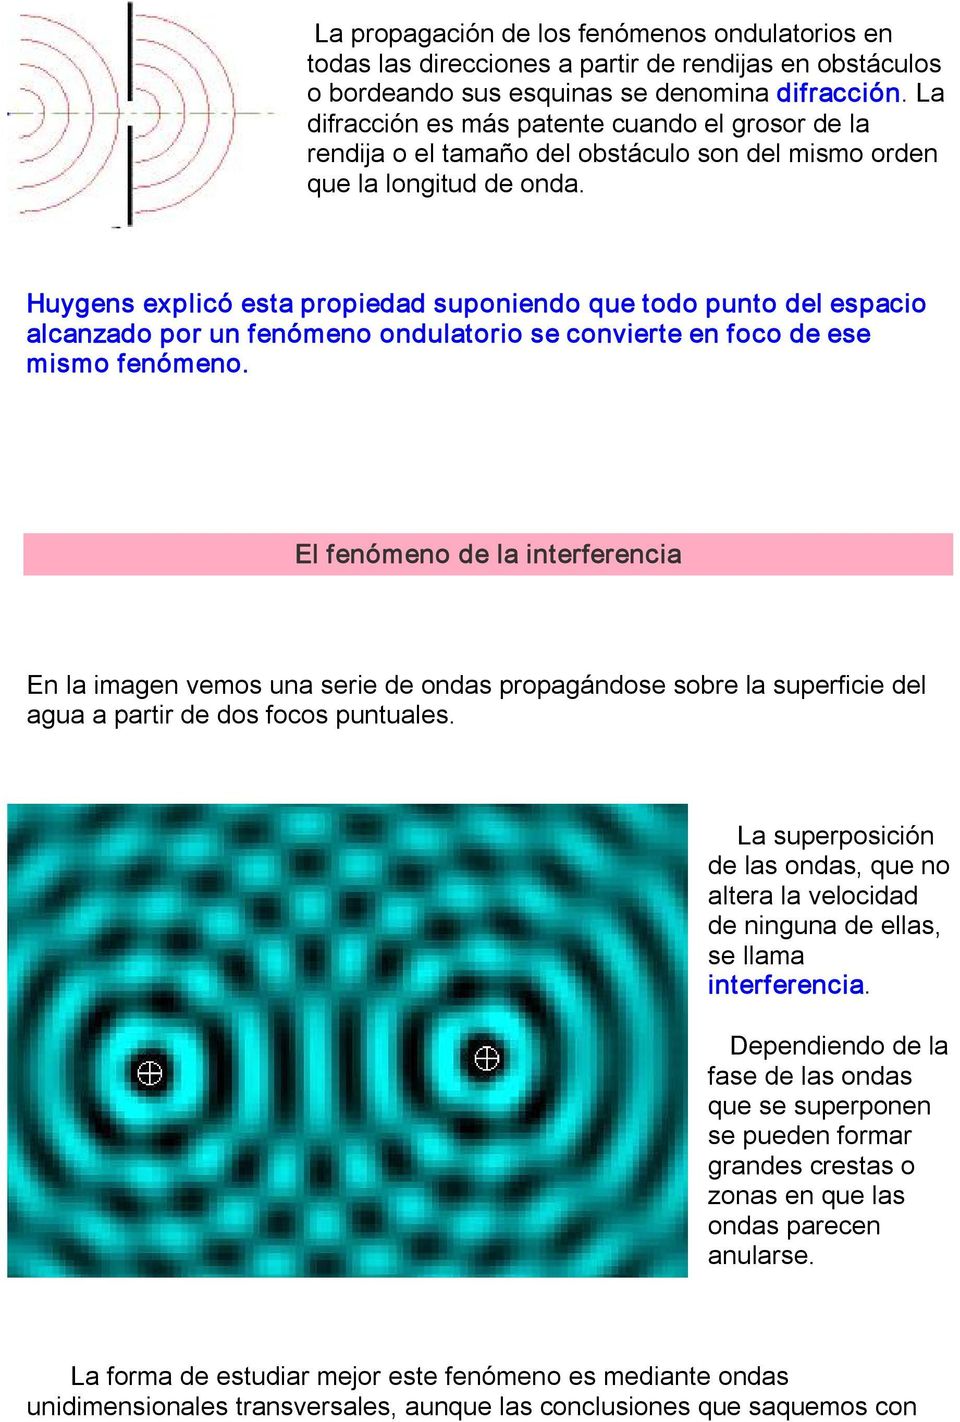 Huygens explicó esta propiedad suponiendo que todo punto del espacio alcanzado por un fenómeno ondulatorio se convierte en foco de ese mismo fenómeno.